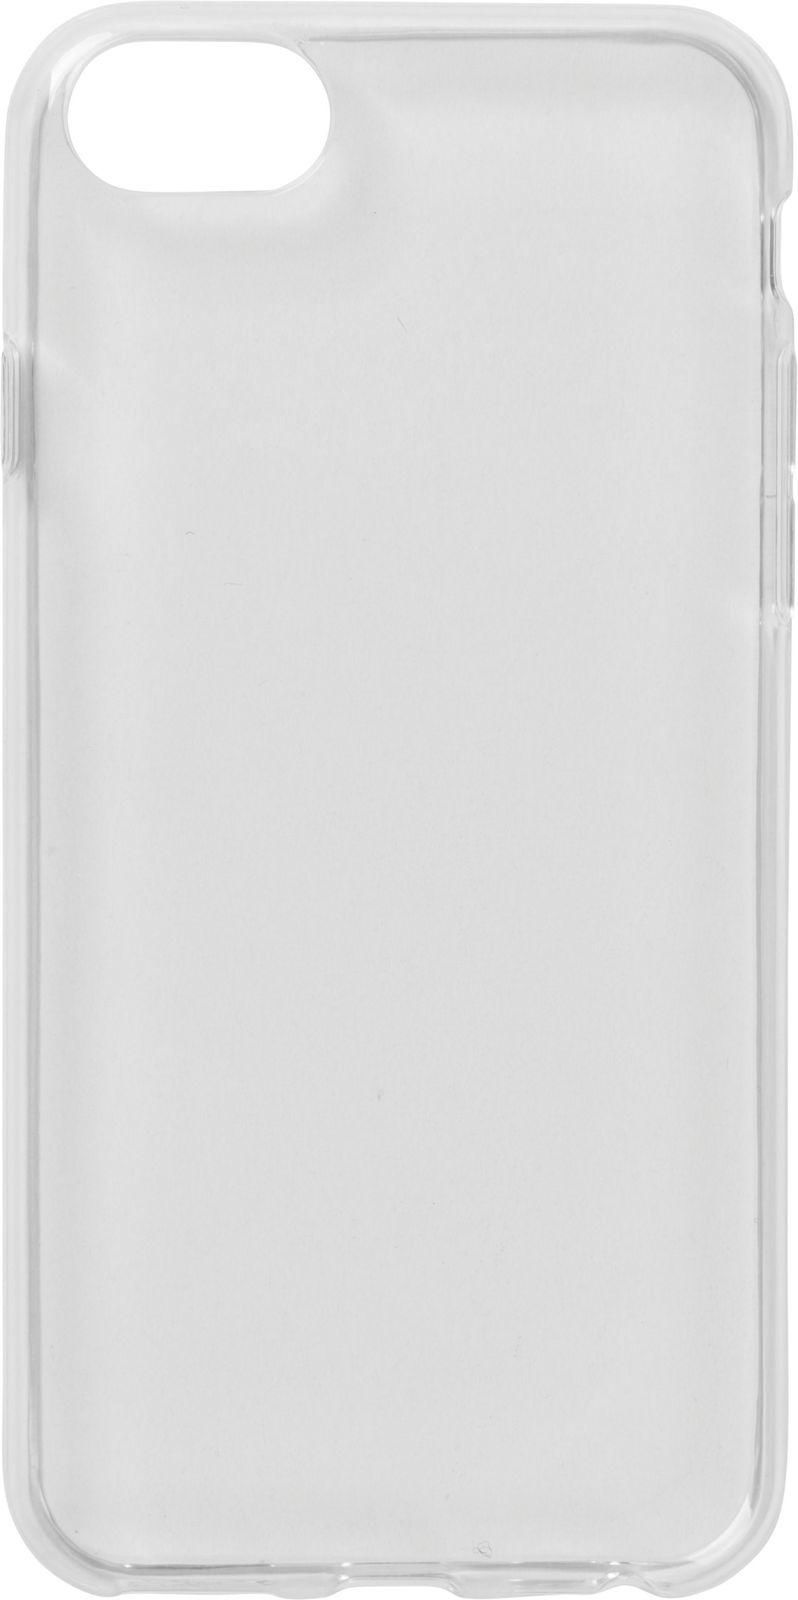 iPhone 6s/7/8 Soft Case Clear Ultra-slim